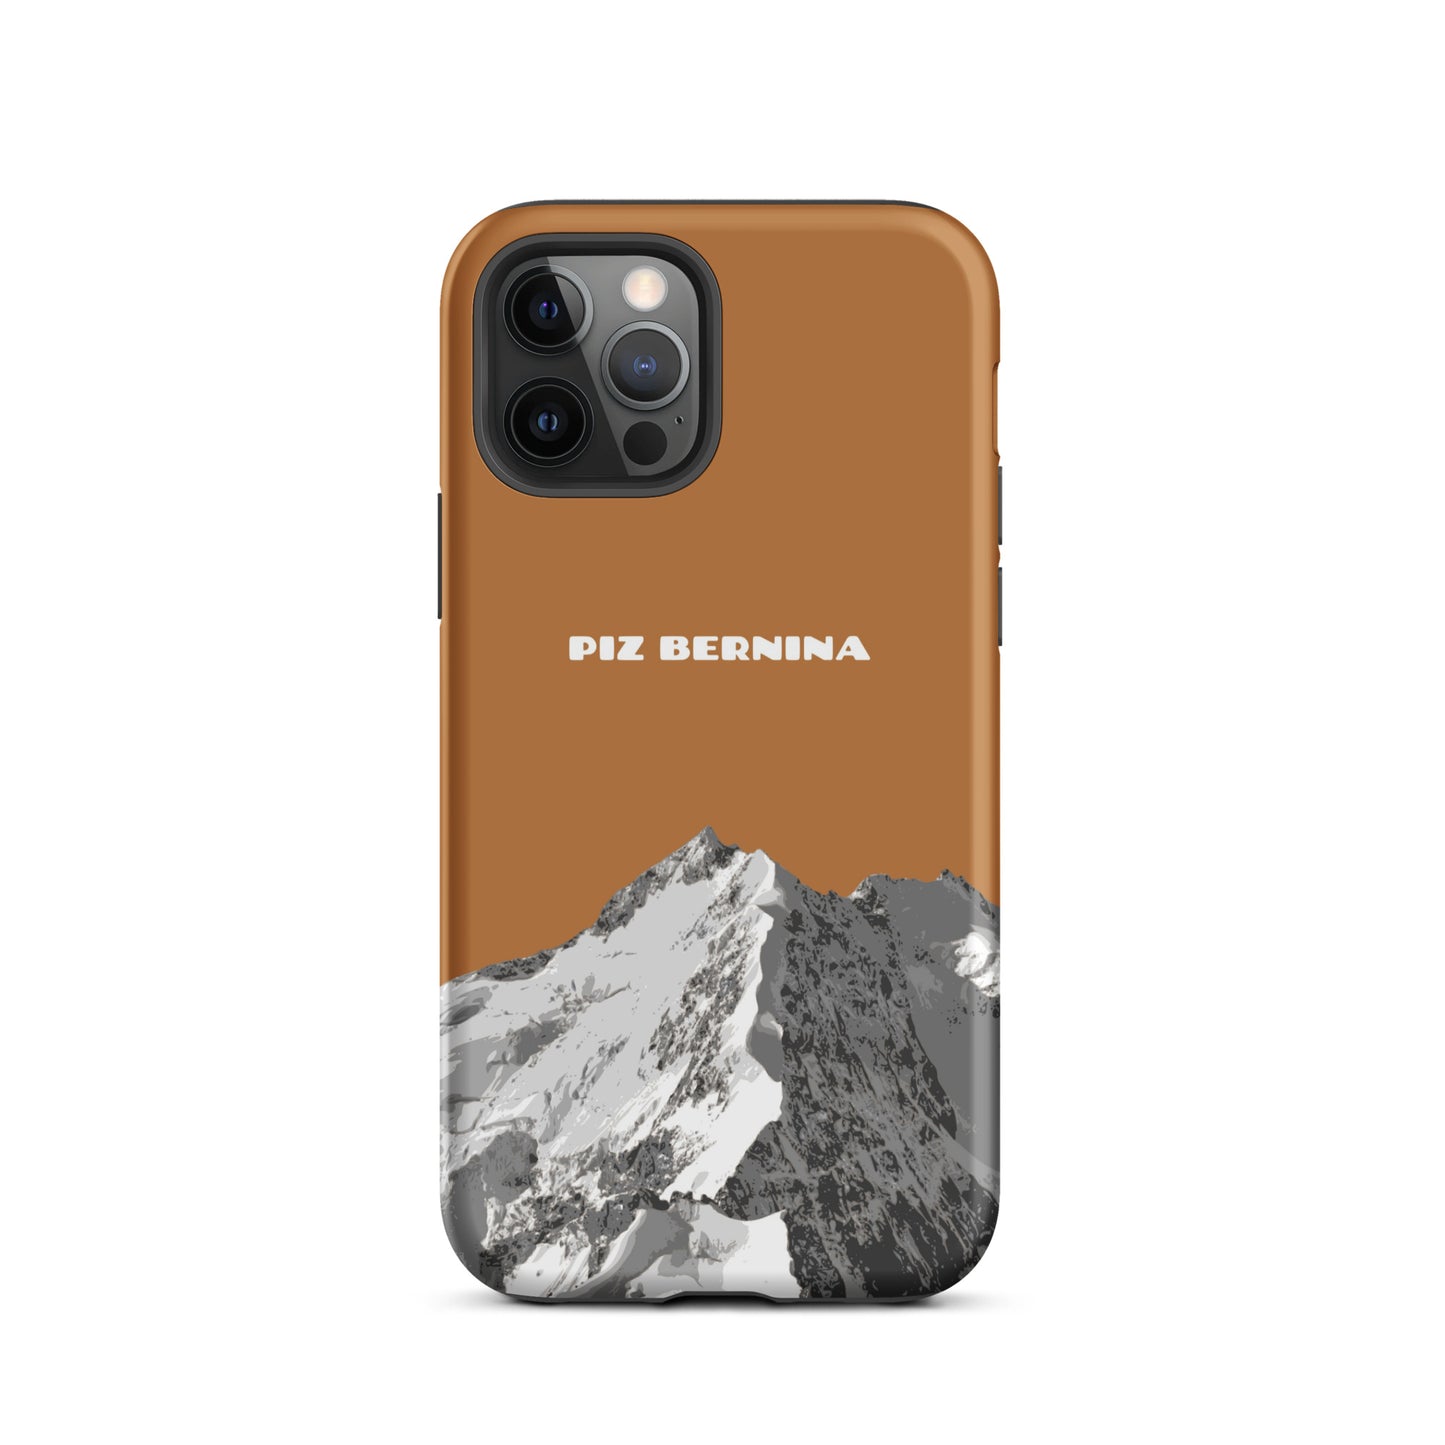 Hülle für das iPhone 12 Pro von Apple in der Farbe Kupfer, dass den Piz Bernina in Graubünden zeigt.